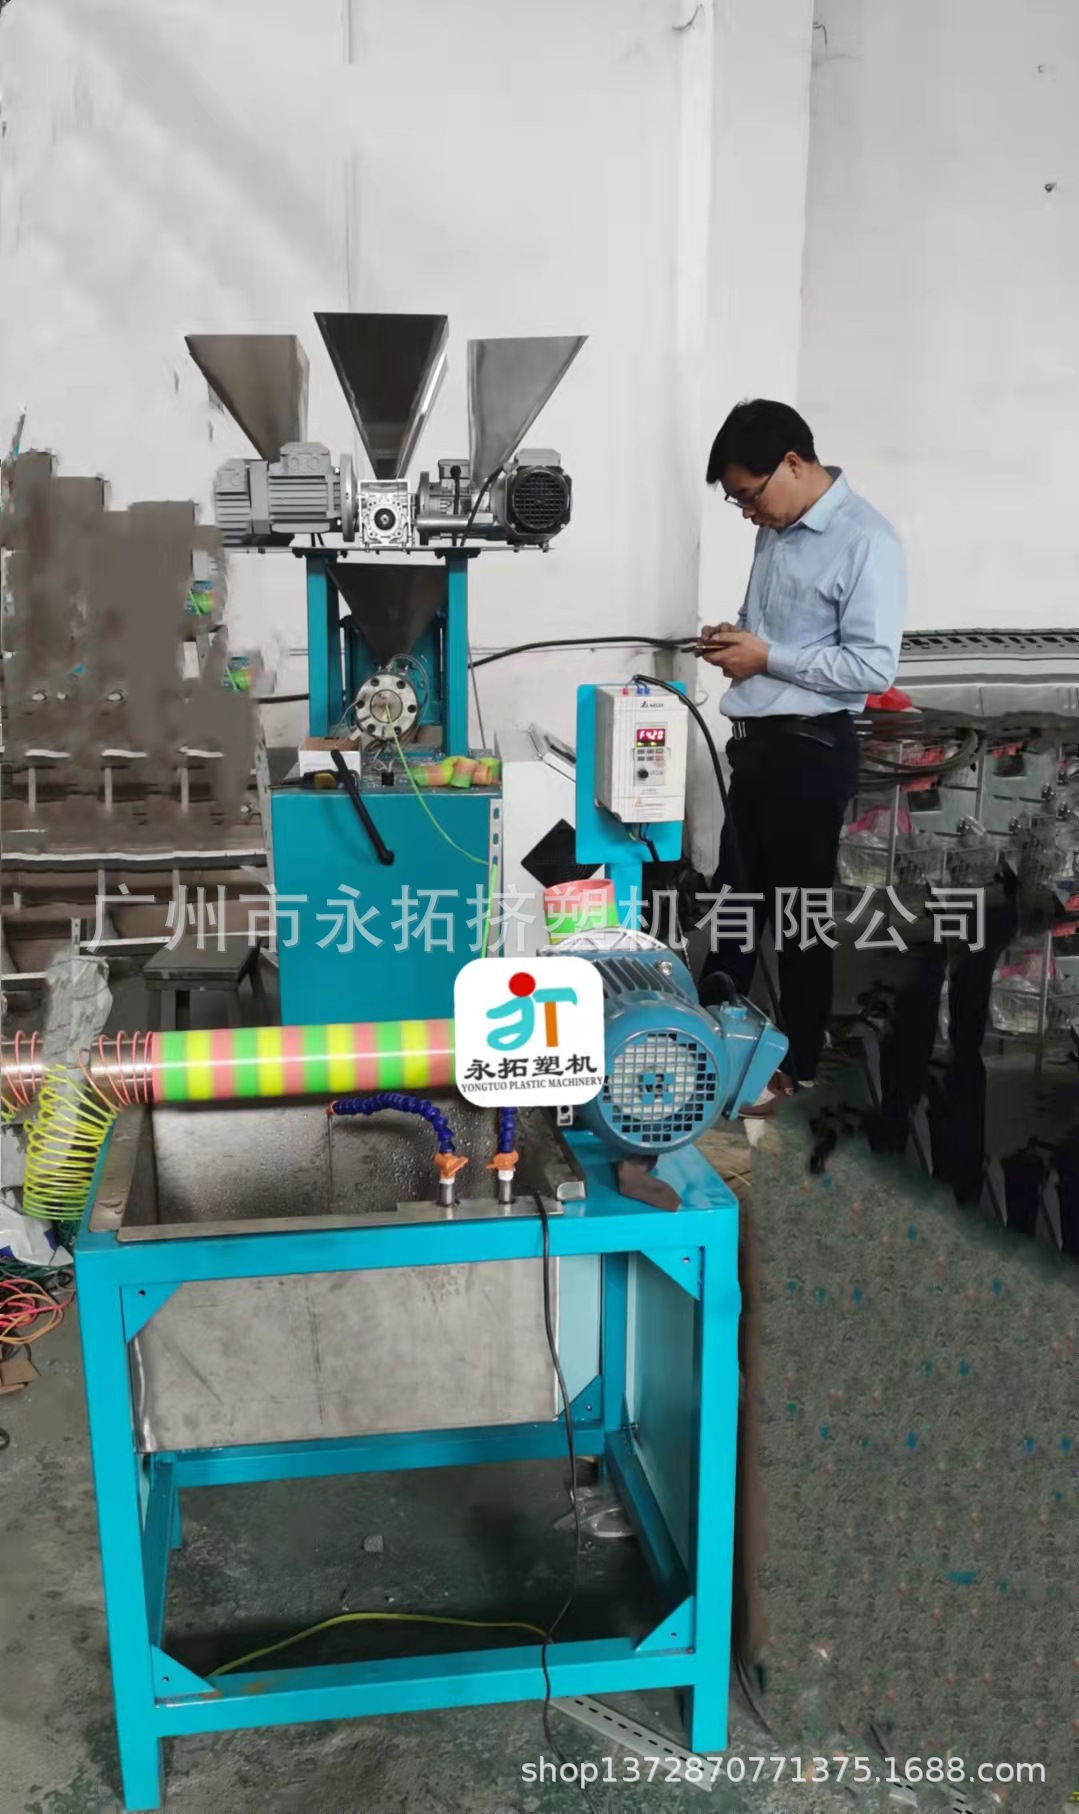 彩虹圈机器 彩虹圈挤出设备 彩虹圈生产设备——广州永拓智造